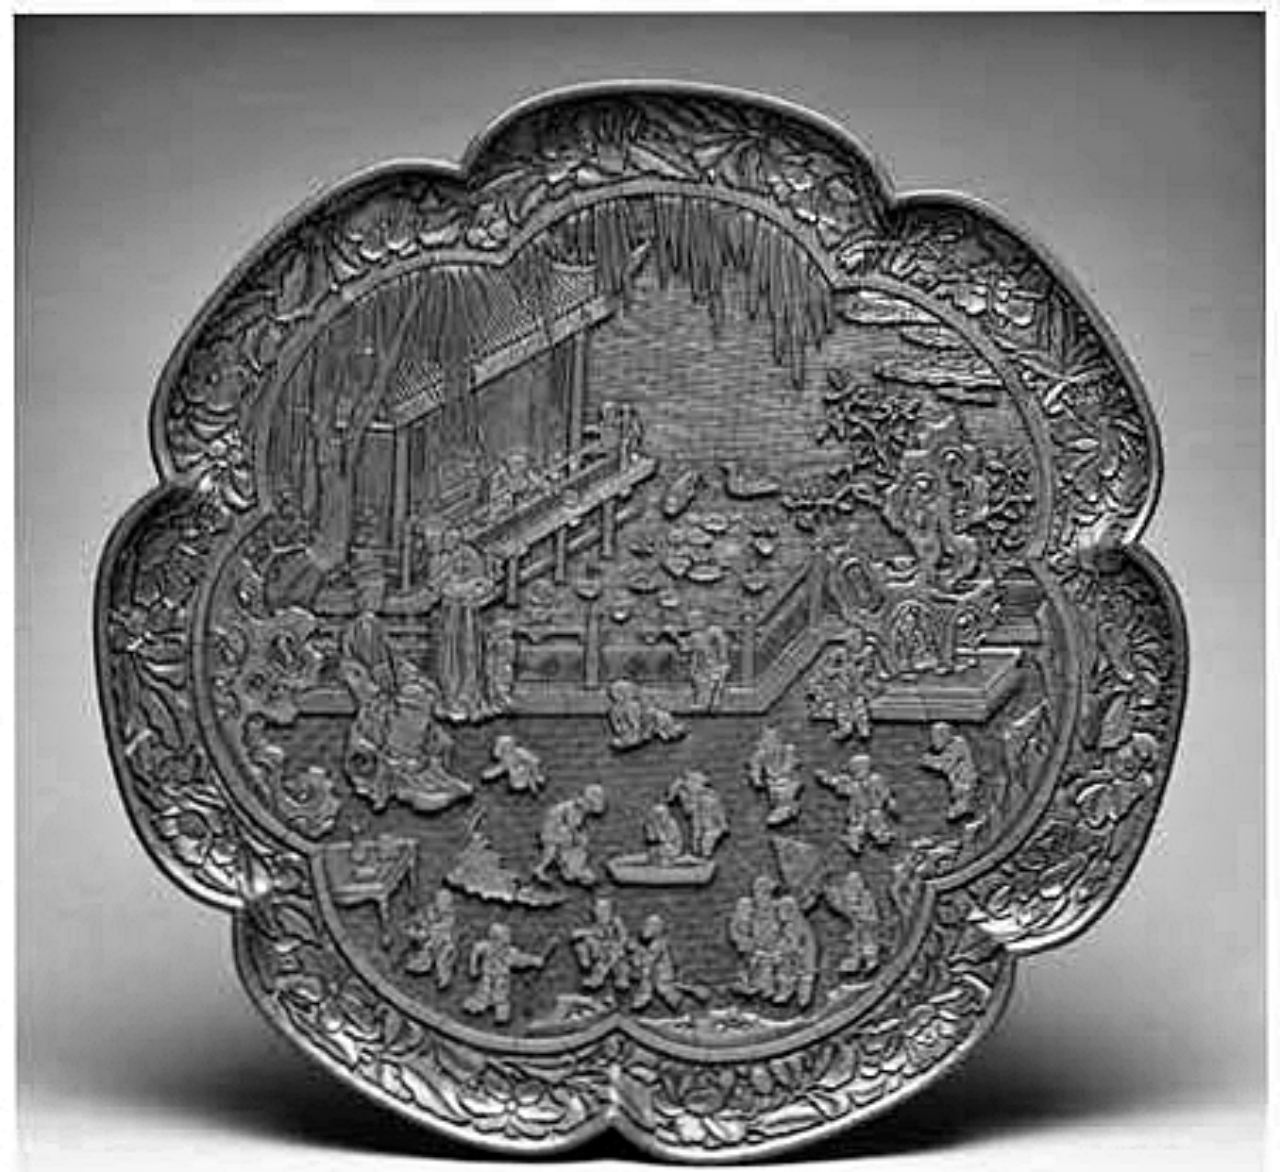 圖33 元,剔紅百嬰戲圖僻式盤,紐約大都會博物館 藏,採自 East Asian Lacquer, pl. 23。